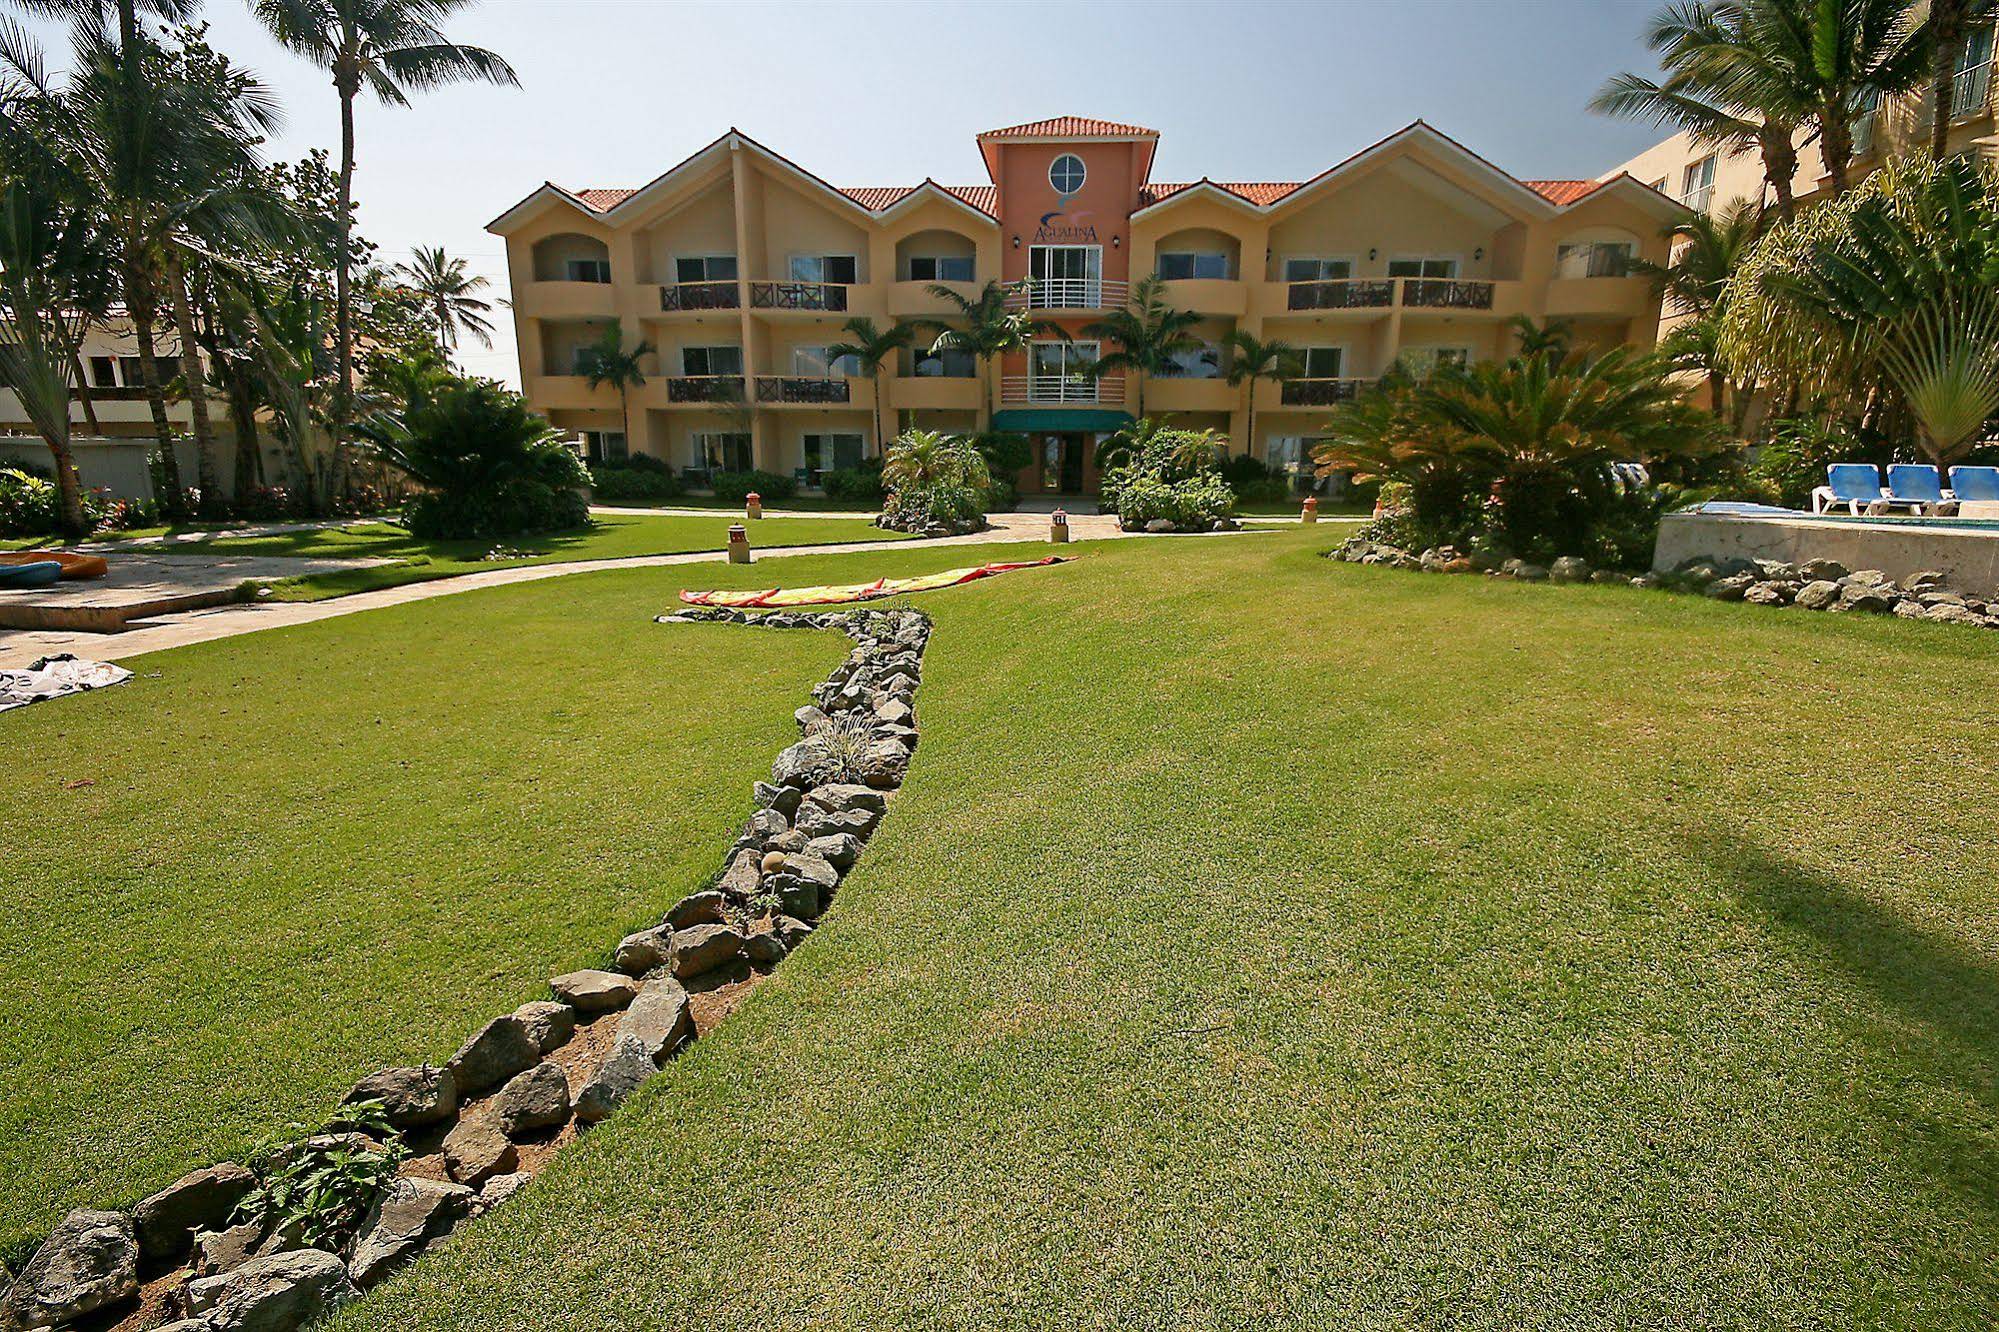 Agualina Kite Resort